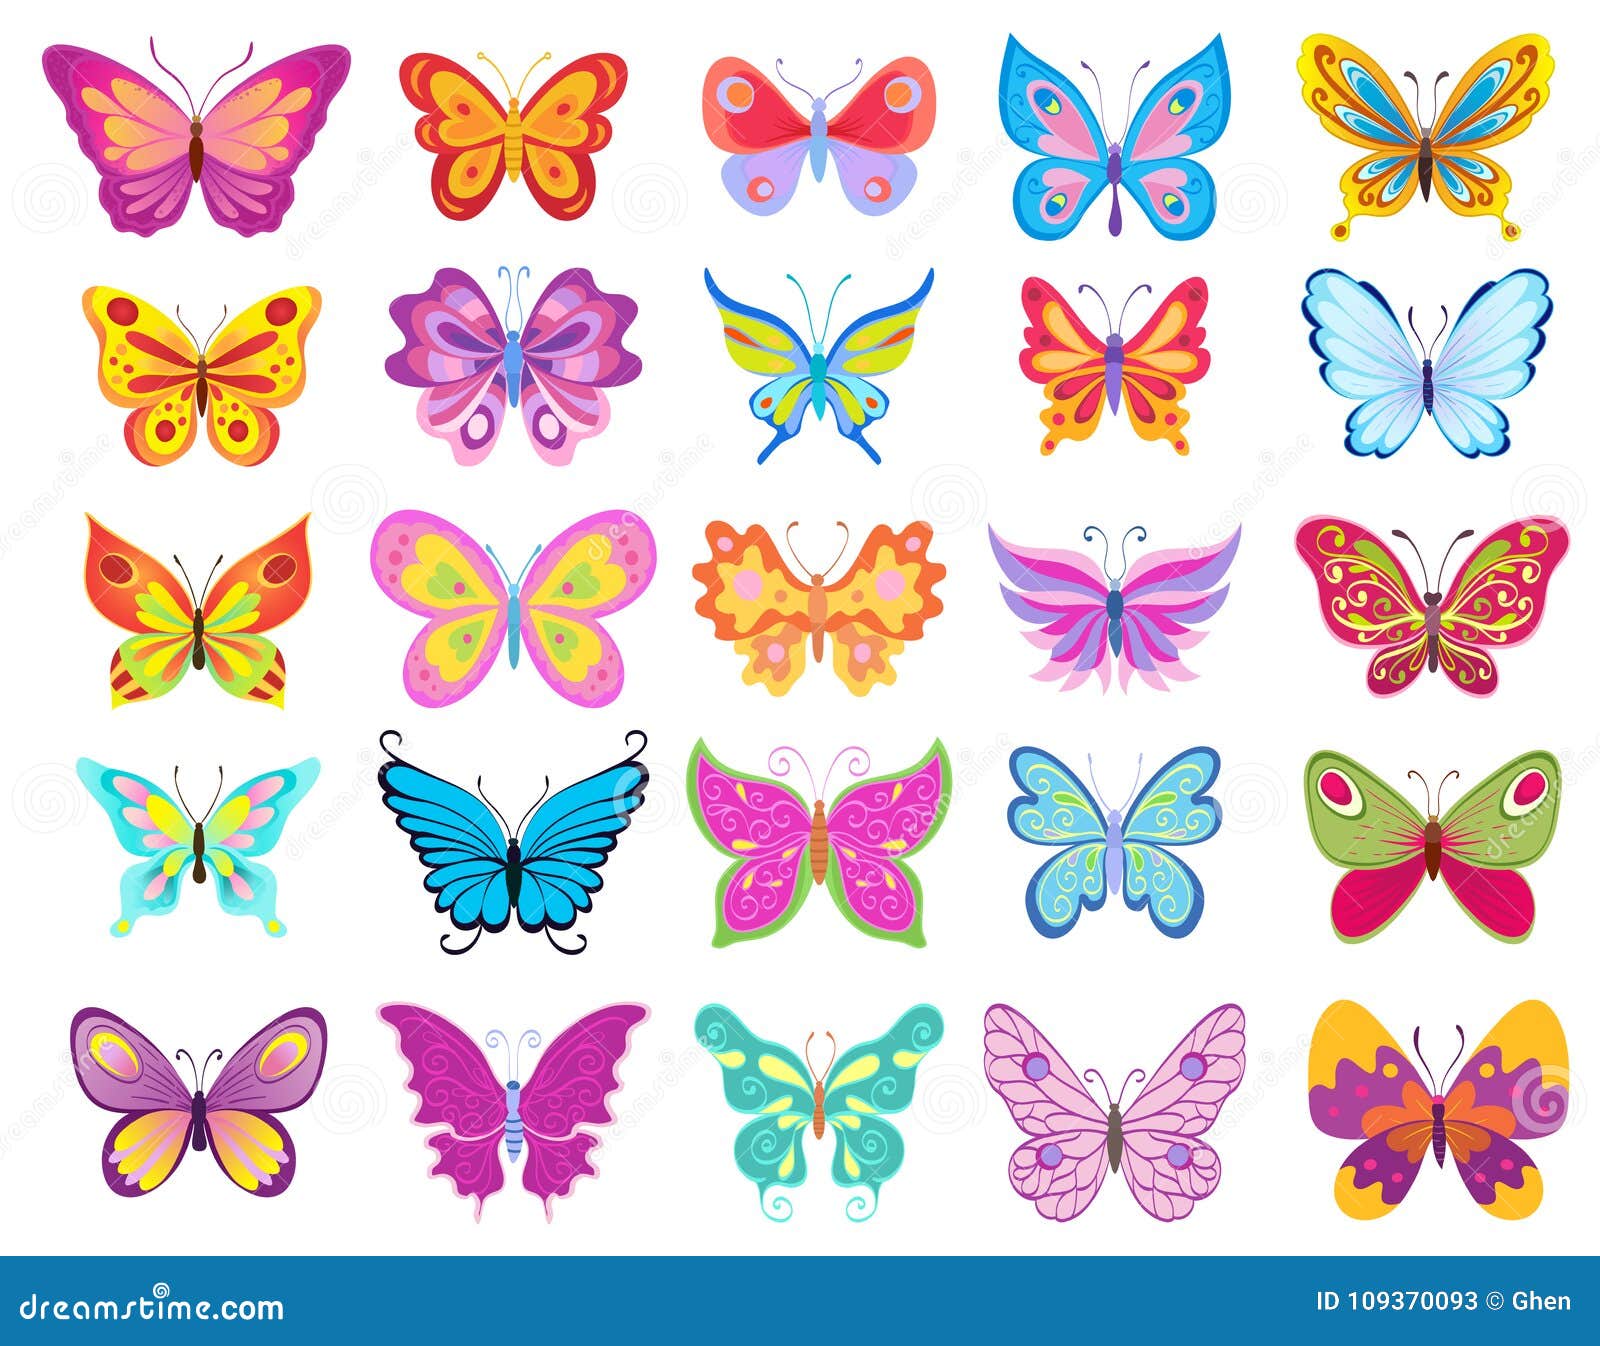 Featured image of post Imagens De Borboletas Coloridas Em Desenho - Admiradas até por quem tem nojinho de insetos, as borboletas marcam presença em quase todos os continentes, com suas asas coloridas e sua misteriosa metamorfose.